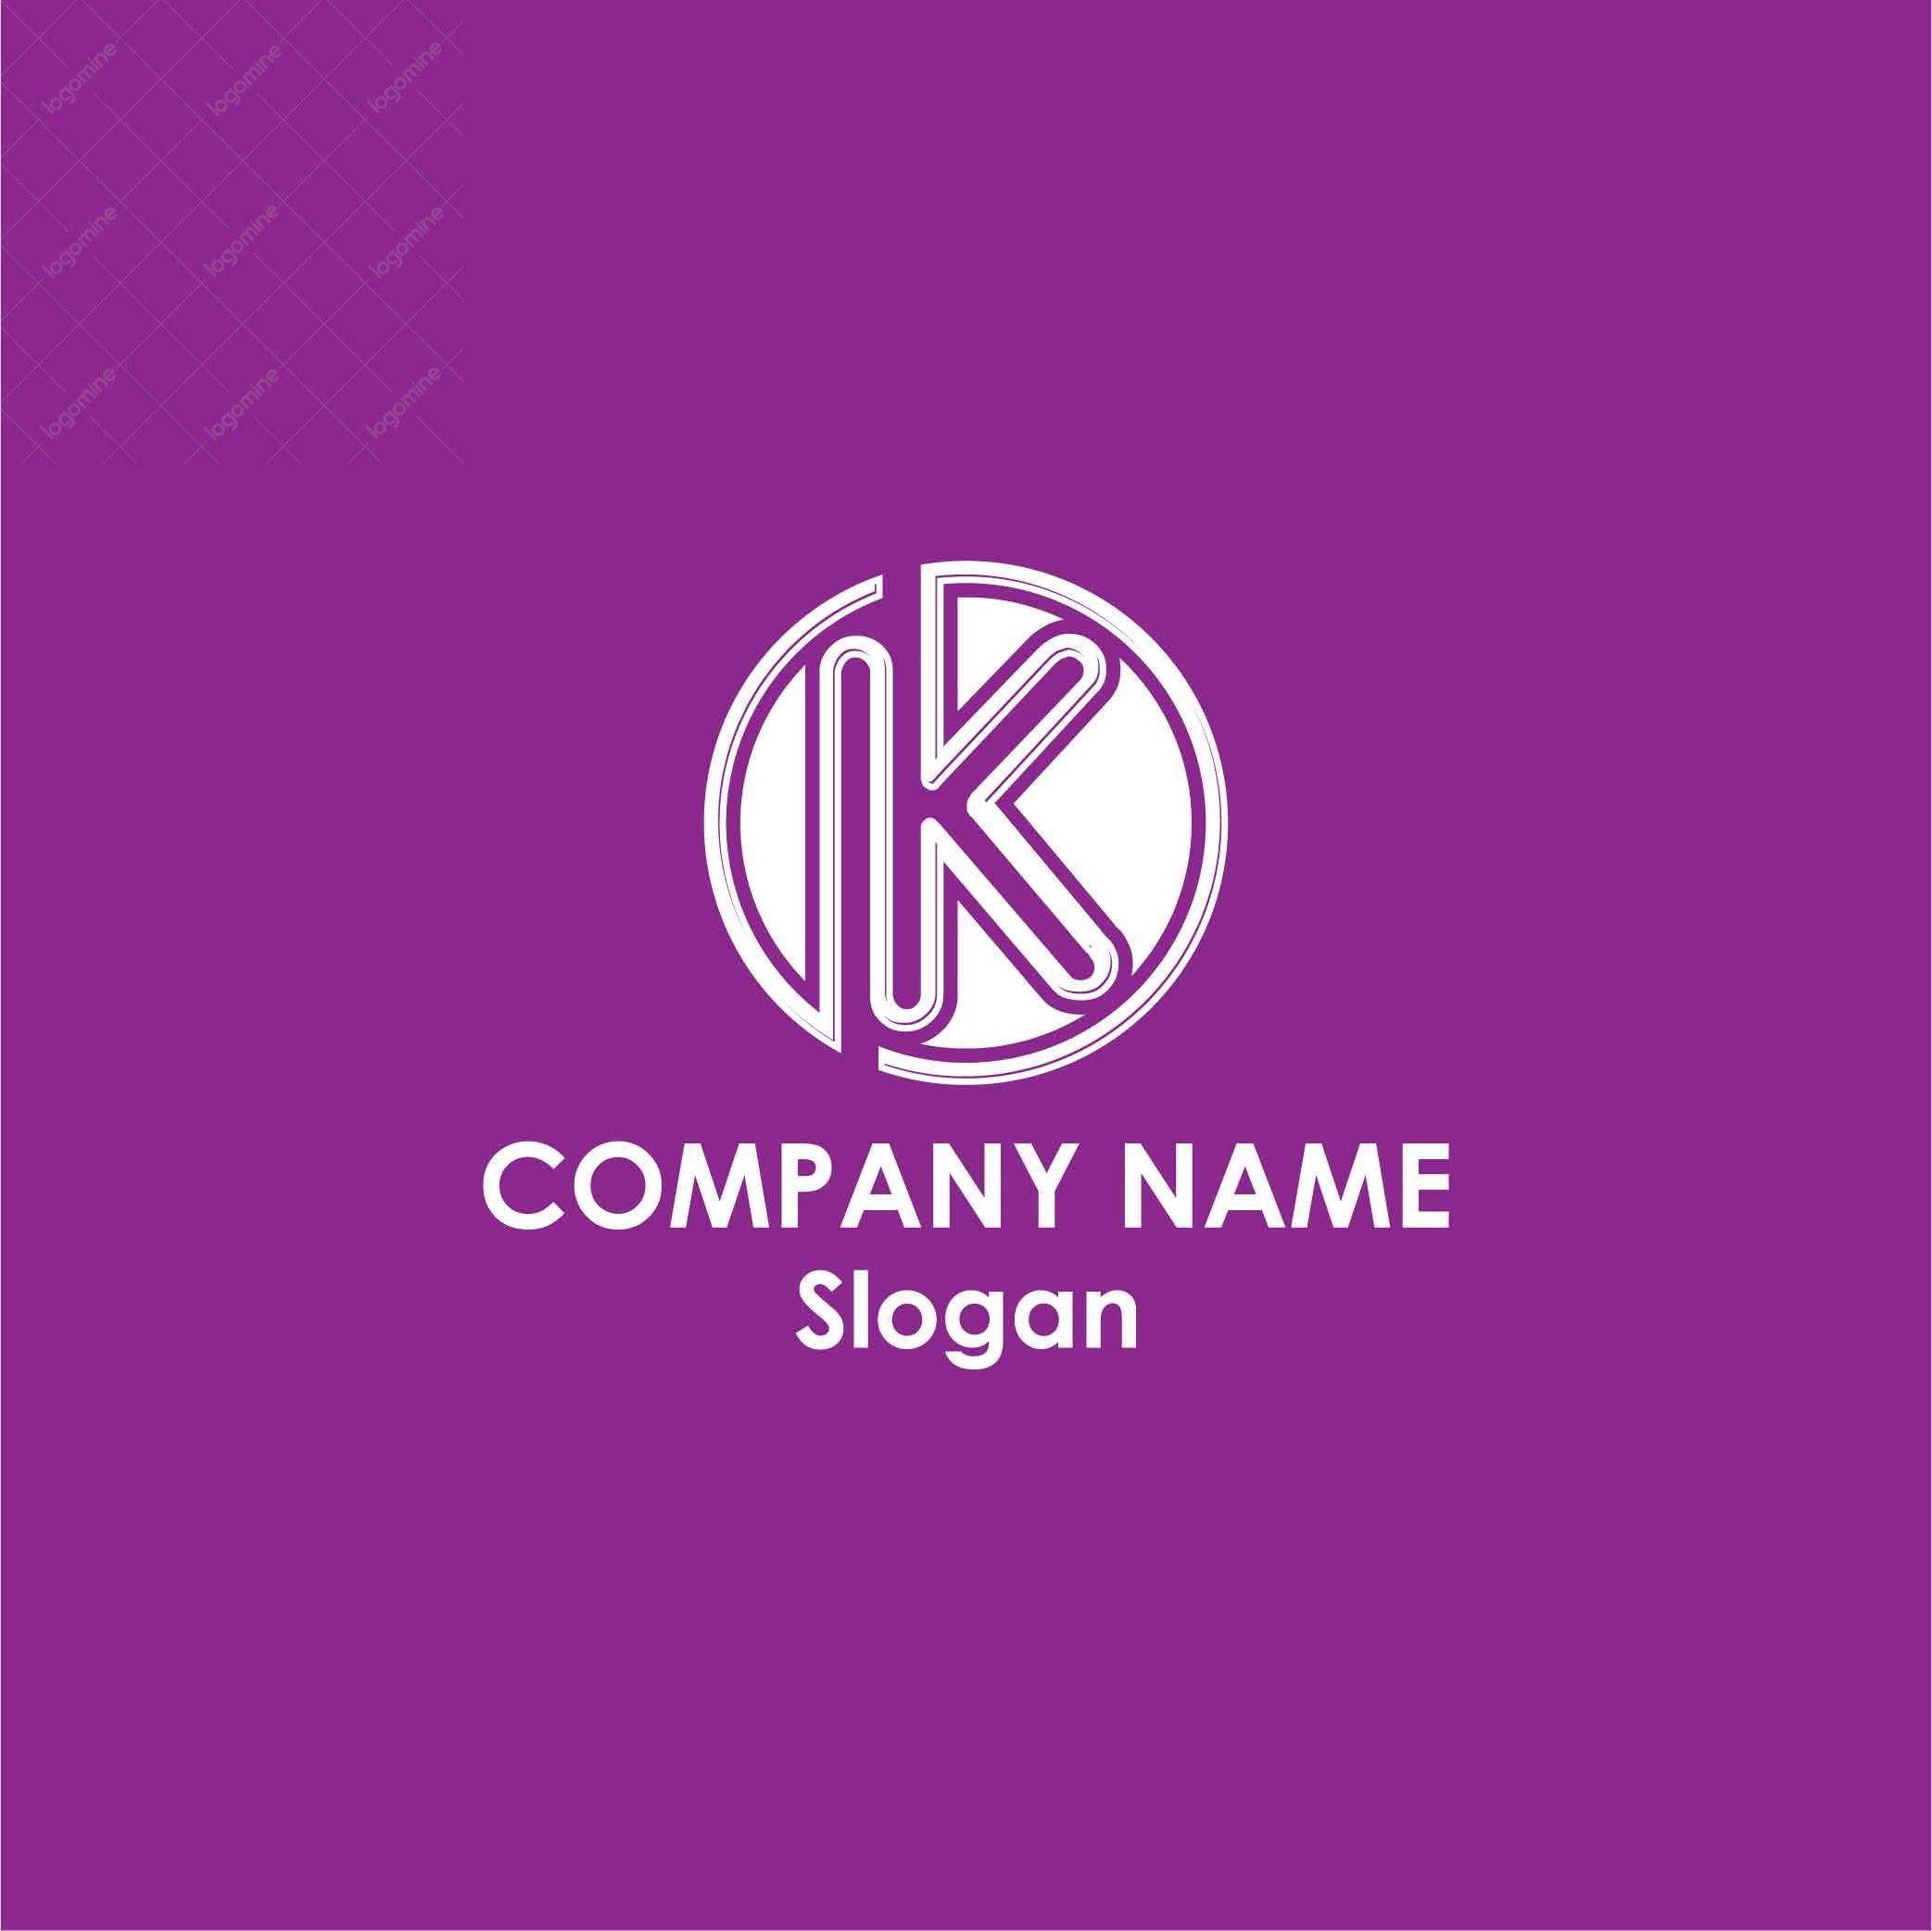 Maroon K Logo - Alphabet K Logo # 9 - Logo Mine - The Logo Design Company